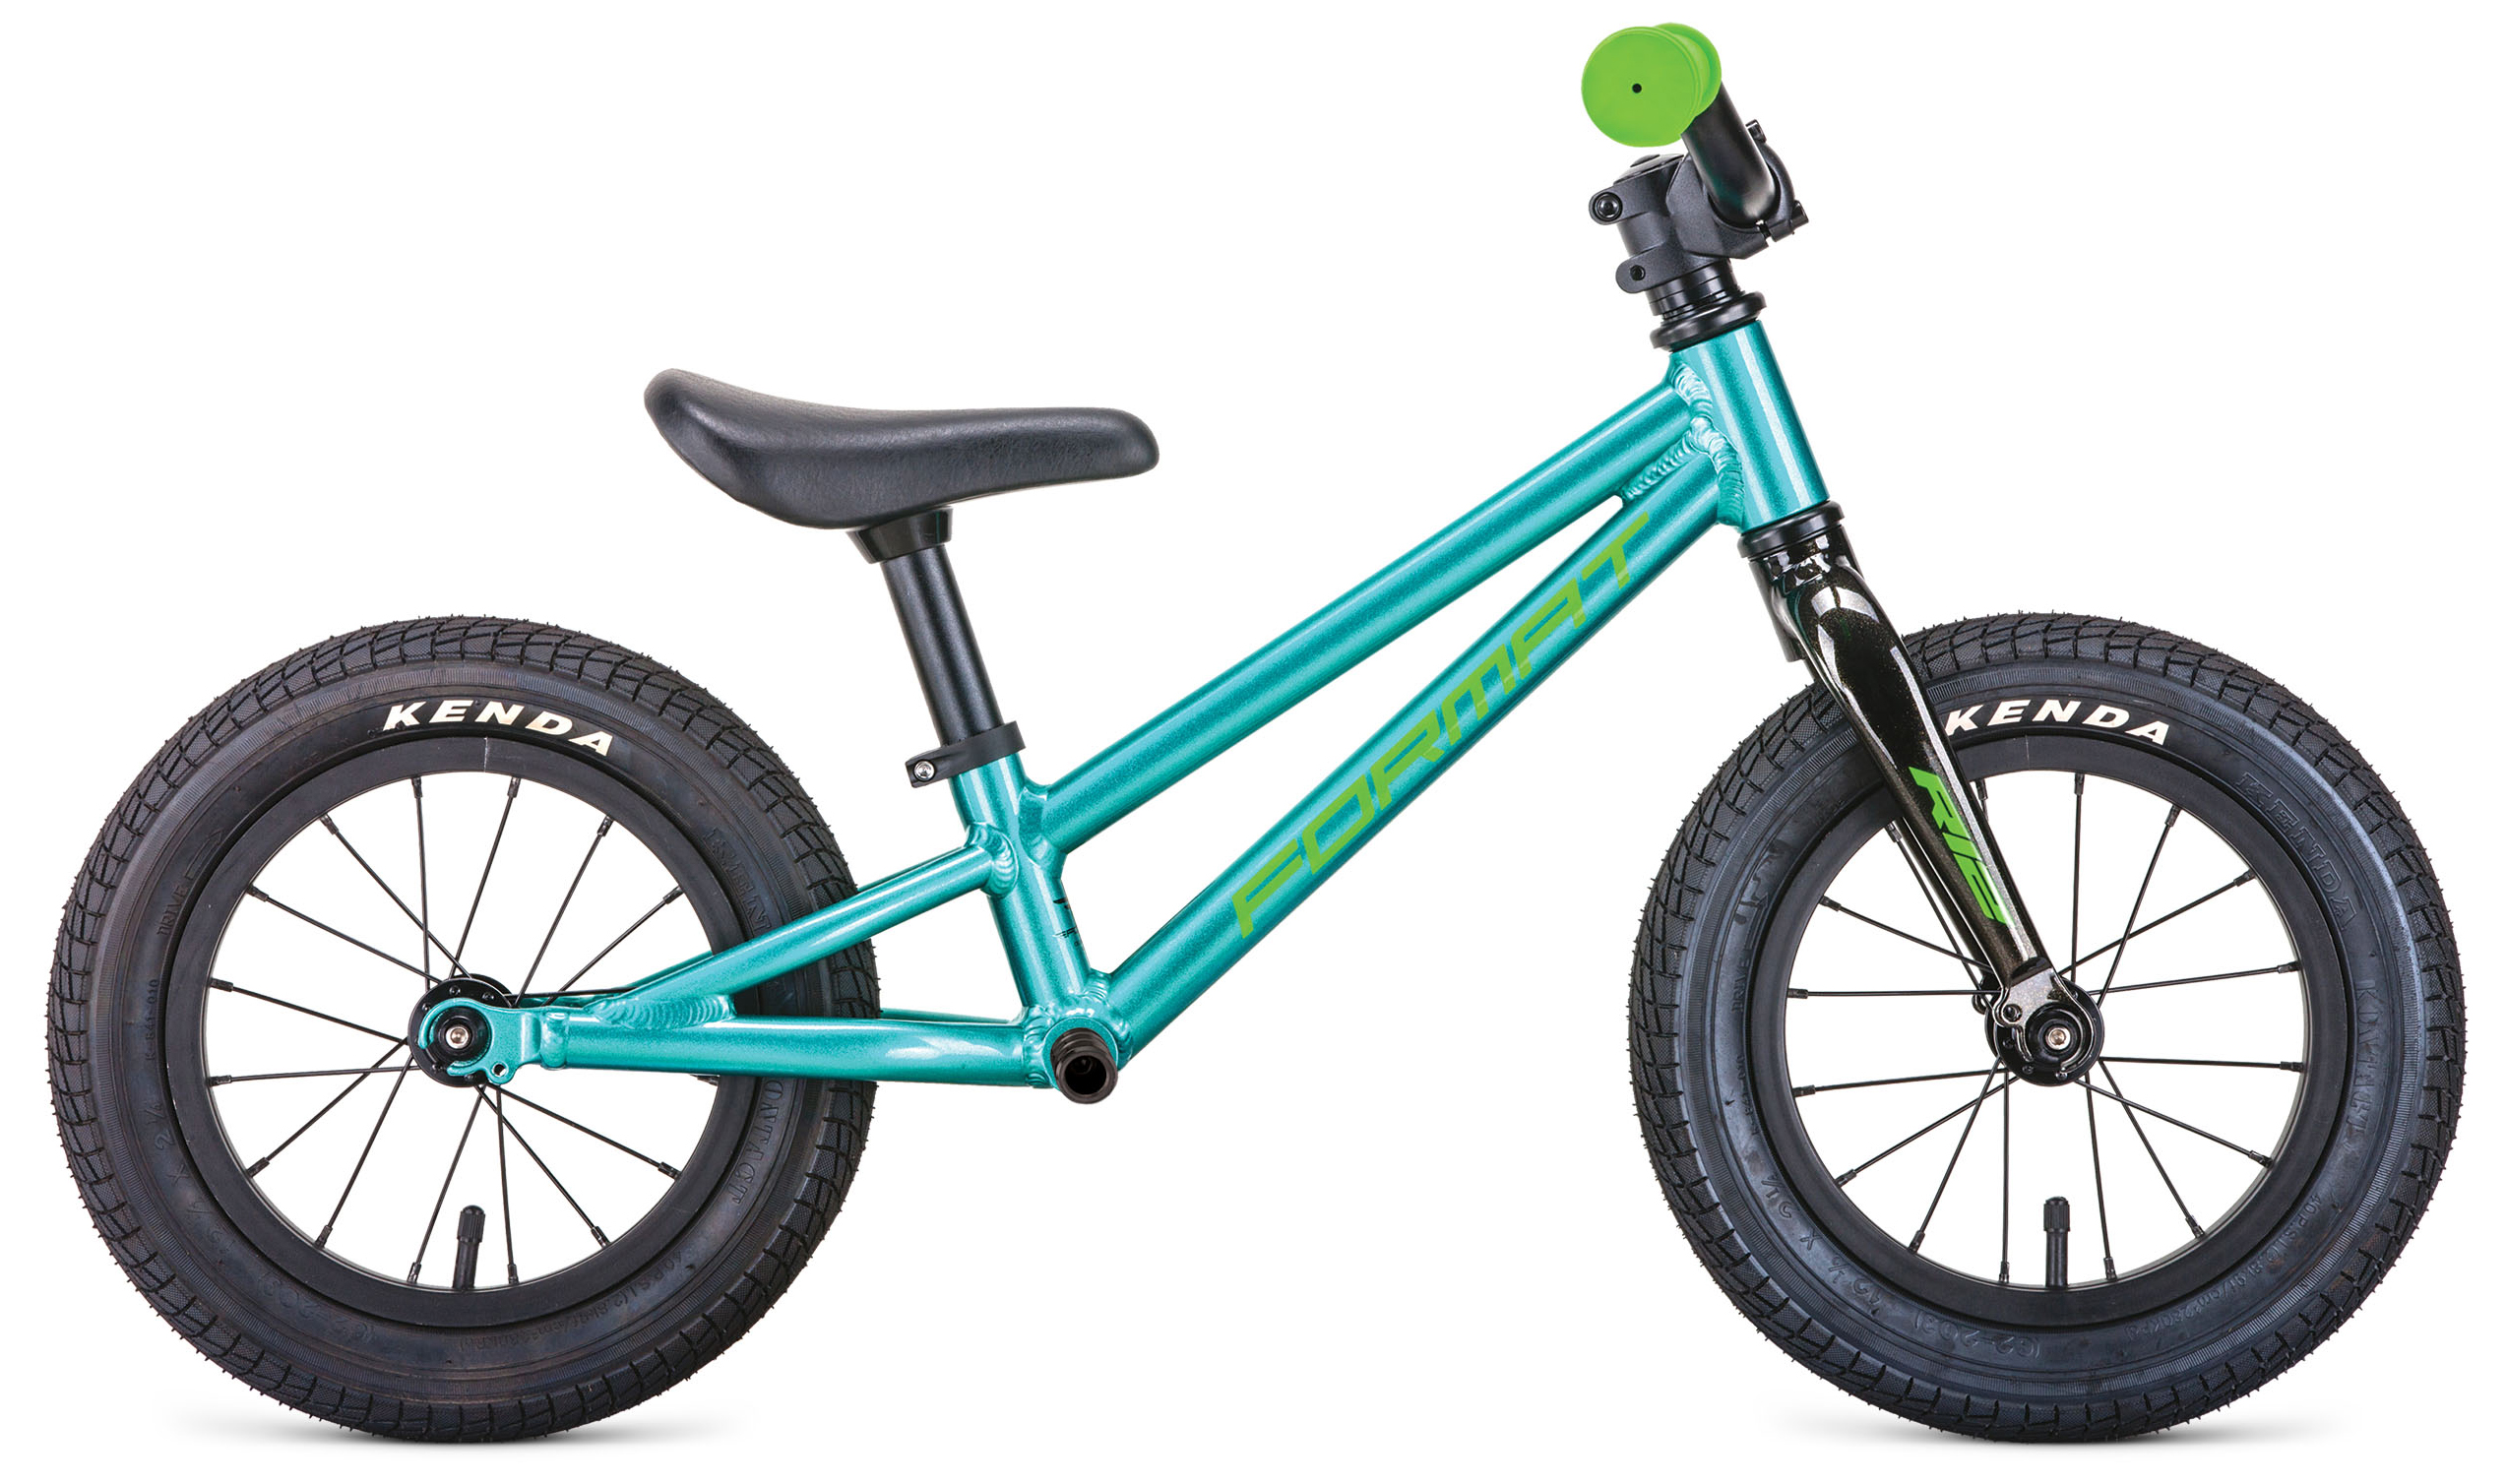  Отзывы о Детском велосипеде Format Runbike 2020